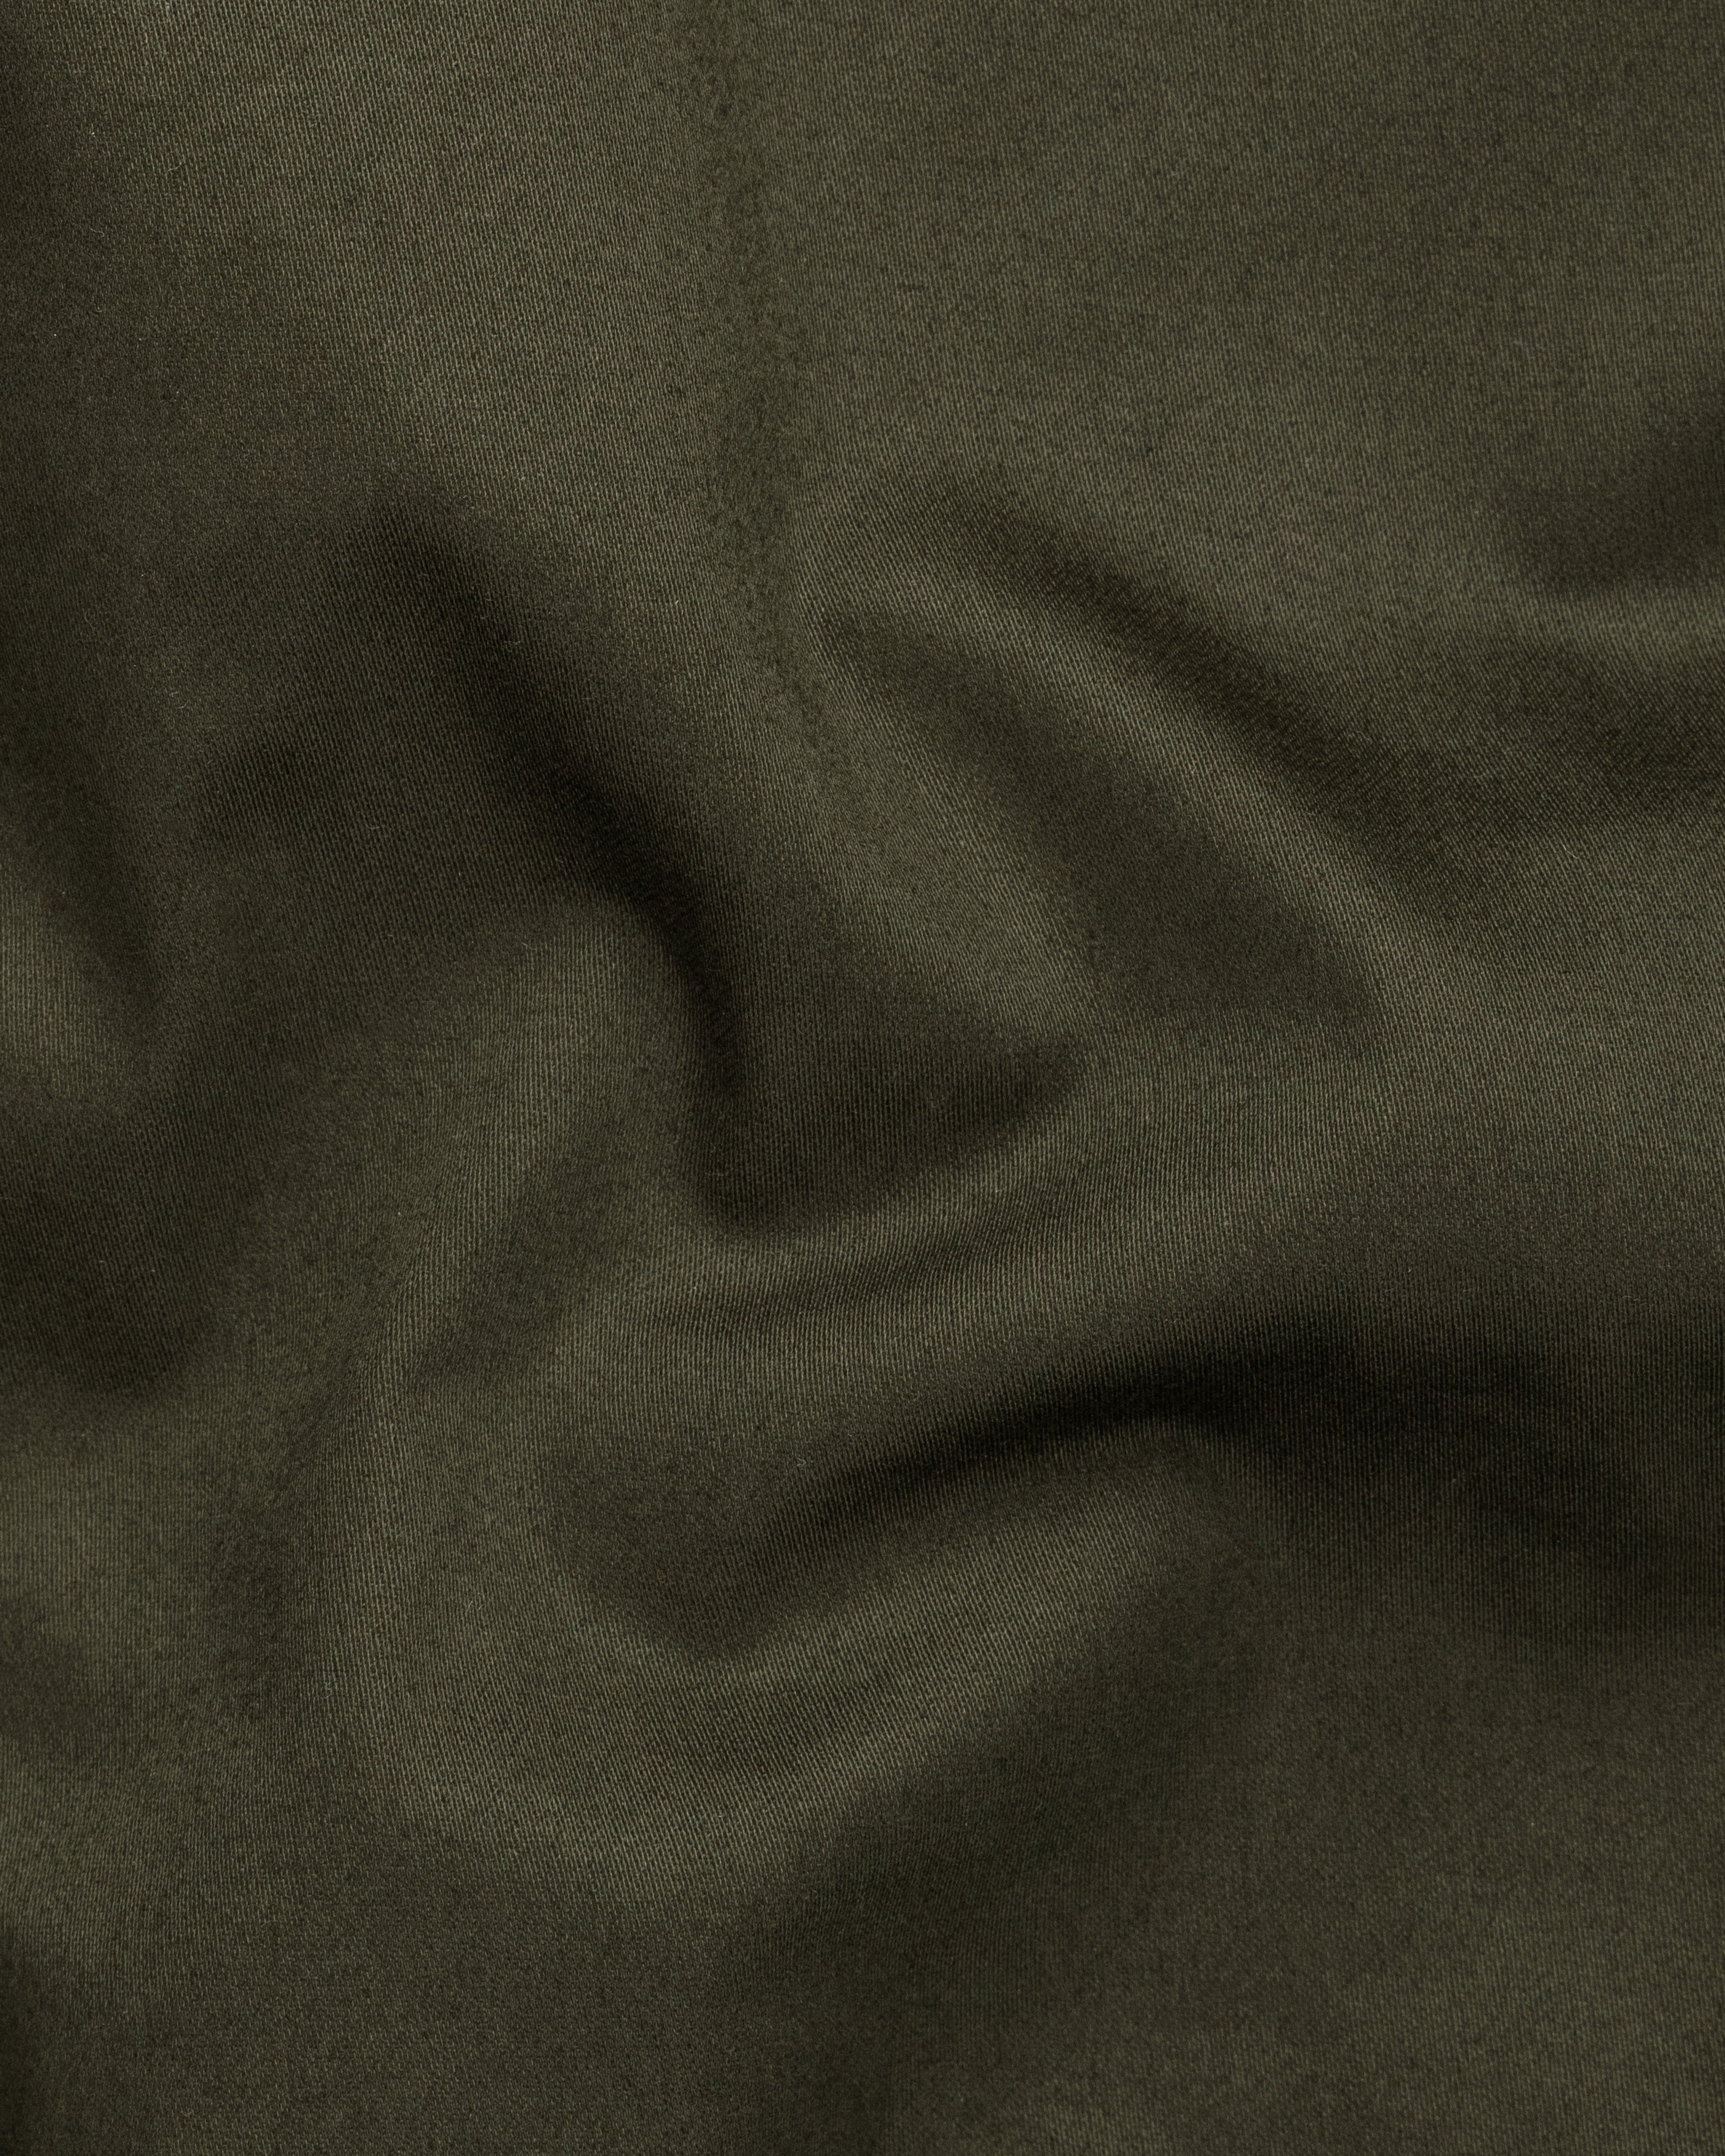 Taupe Green Solid Premium Cotton Nehru Jacket WC2644-36, WC2644-38, WC2644-40, WC2644-42, WC2644-44, WC2644-46, WC2644-48, WC2644-50, WC2644-52, WC2644-54, WC2644-56, WC2644-58, WC2644-60